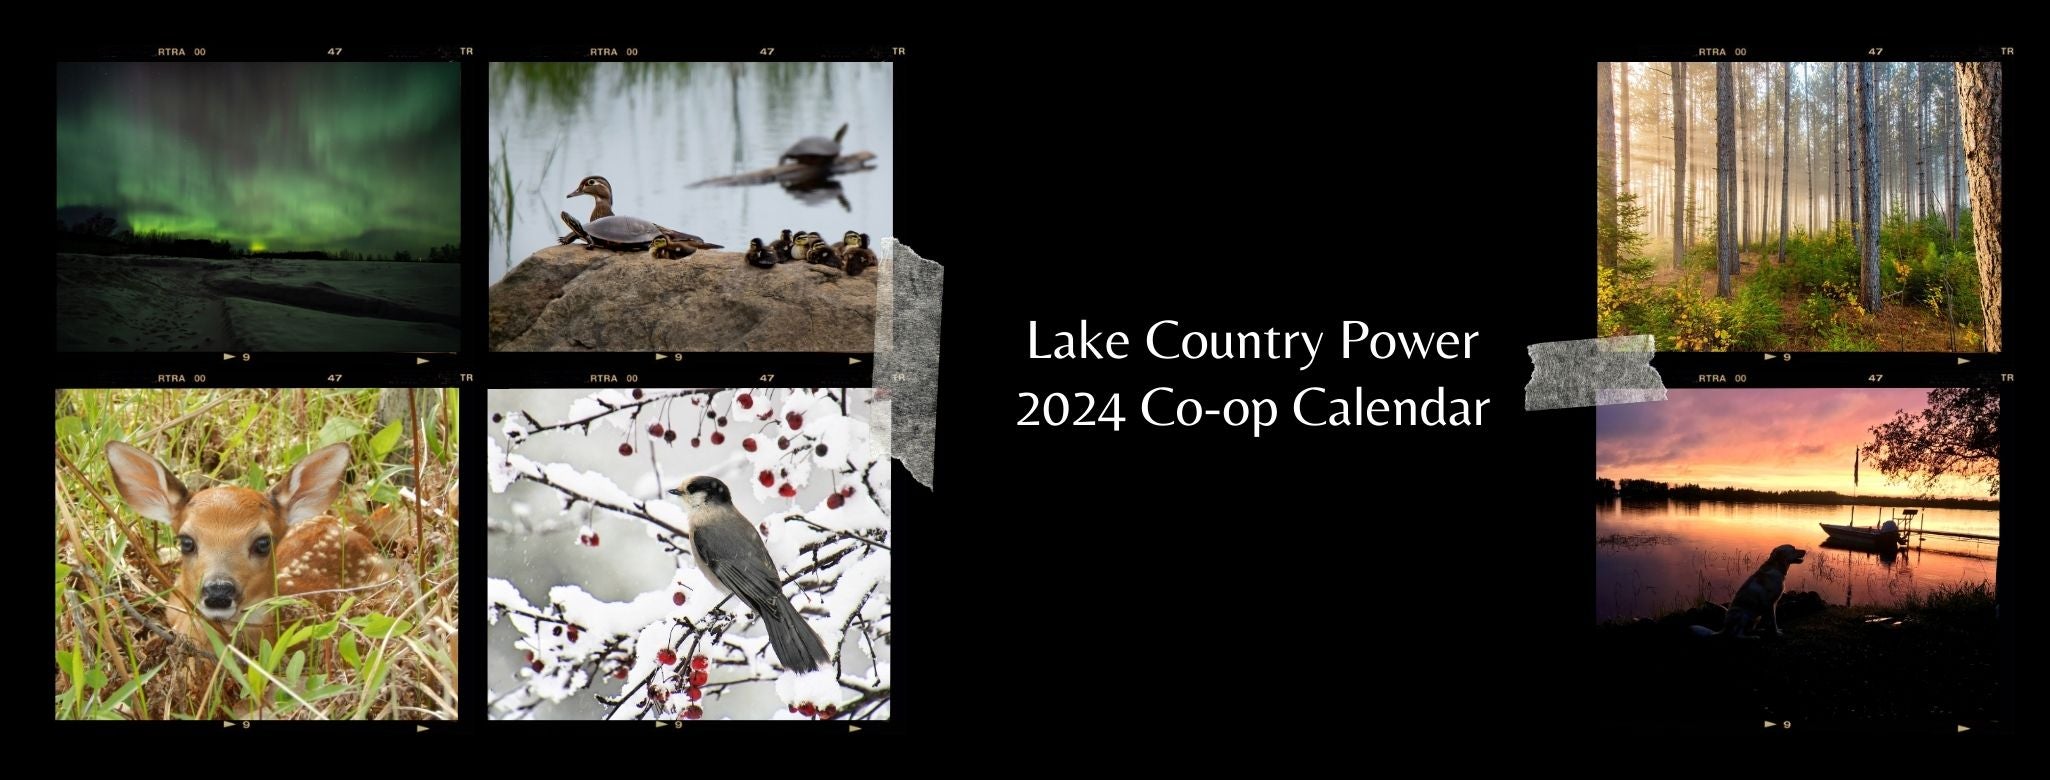 2024 Co-op Calendar header 1